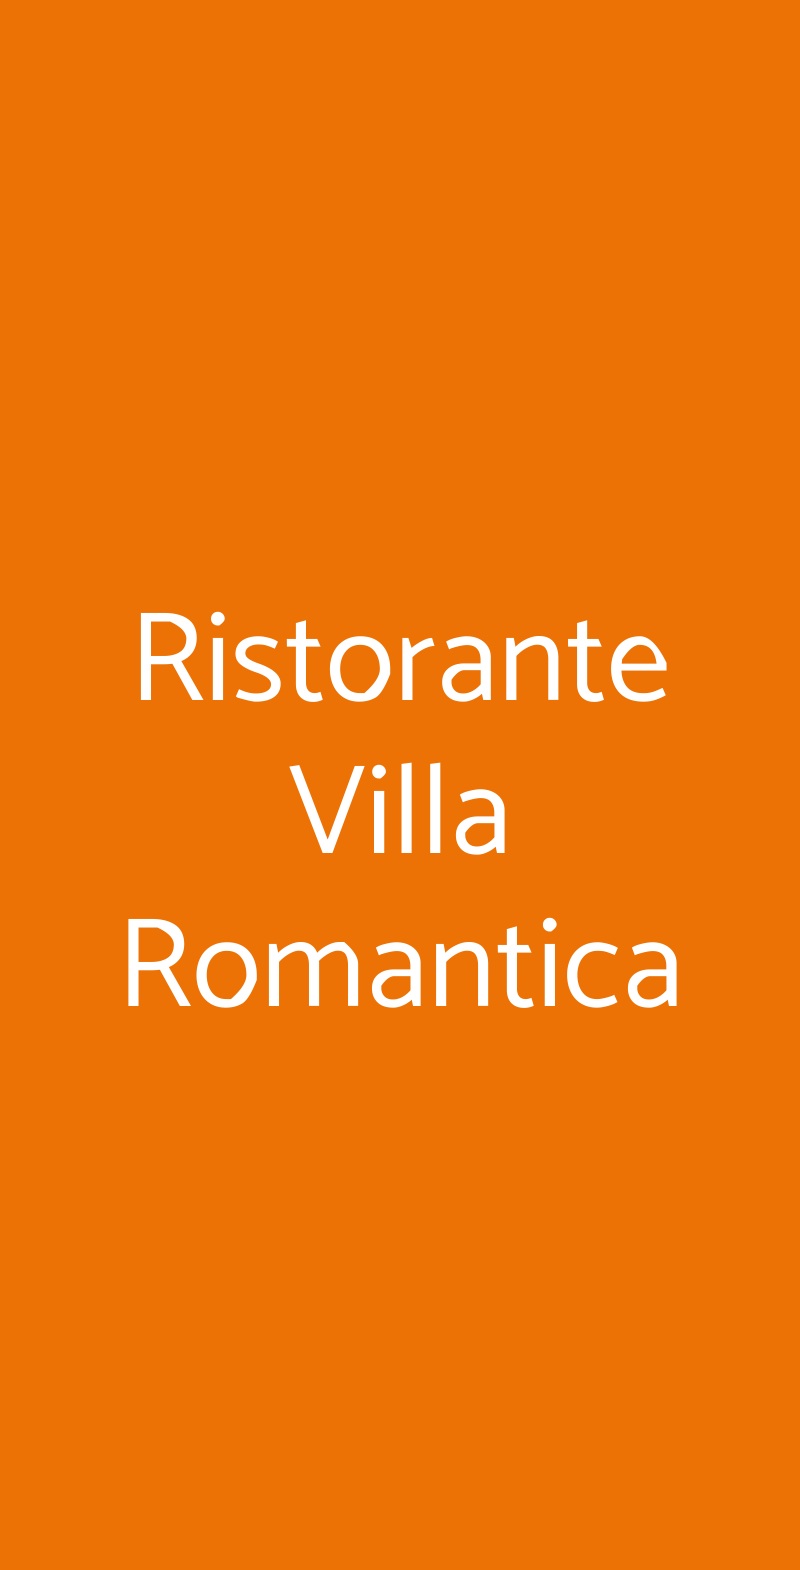 Ristorante Villa Romantica Limone sul Garda menù 1 pagina